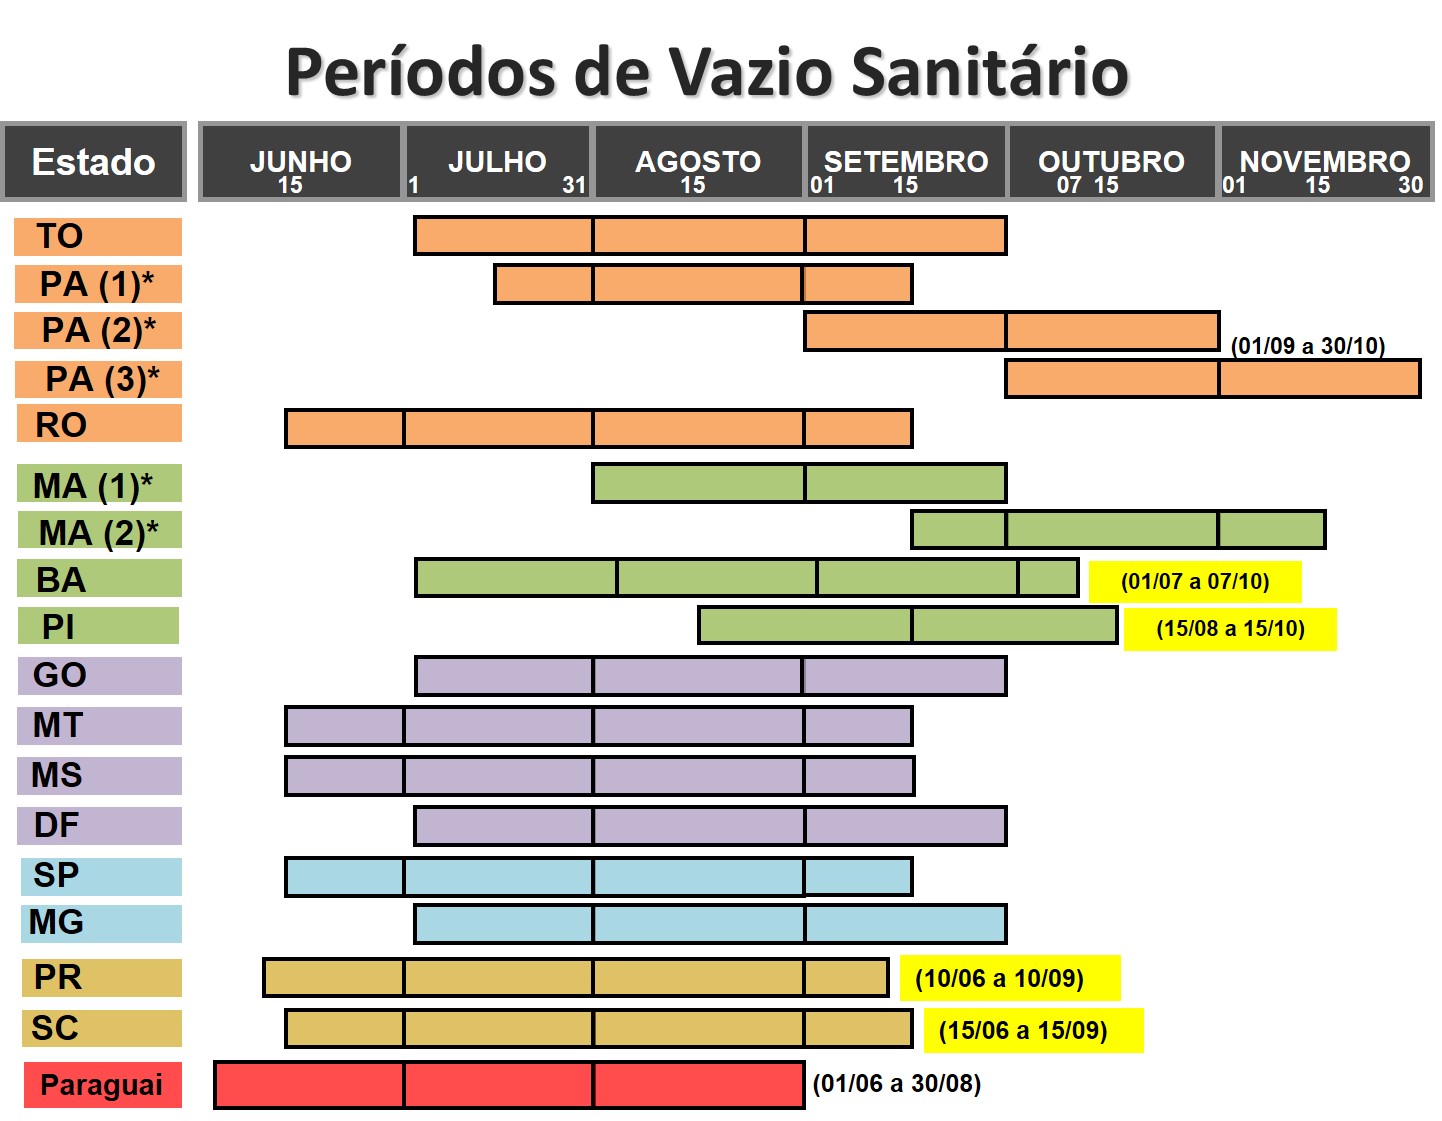 Figura 1 – Períodos de vazio sanitário da soja em estados brasileiros.